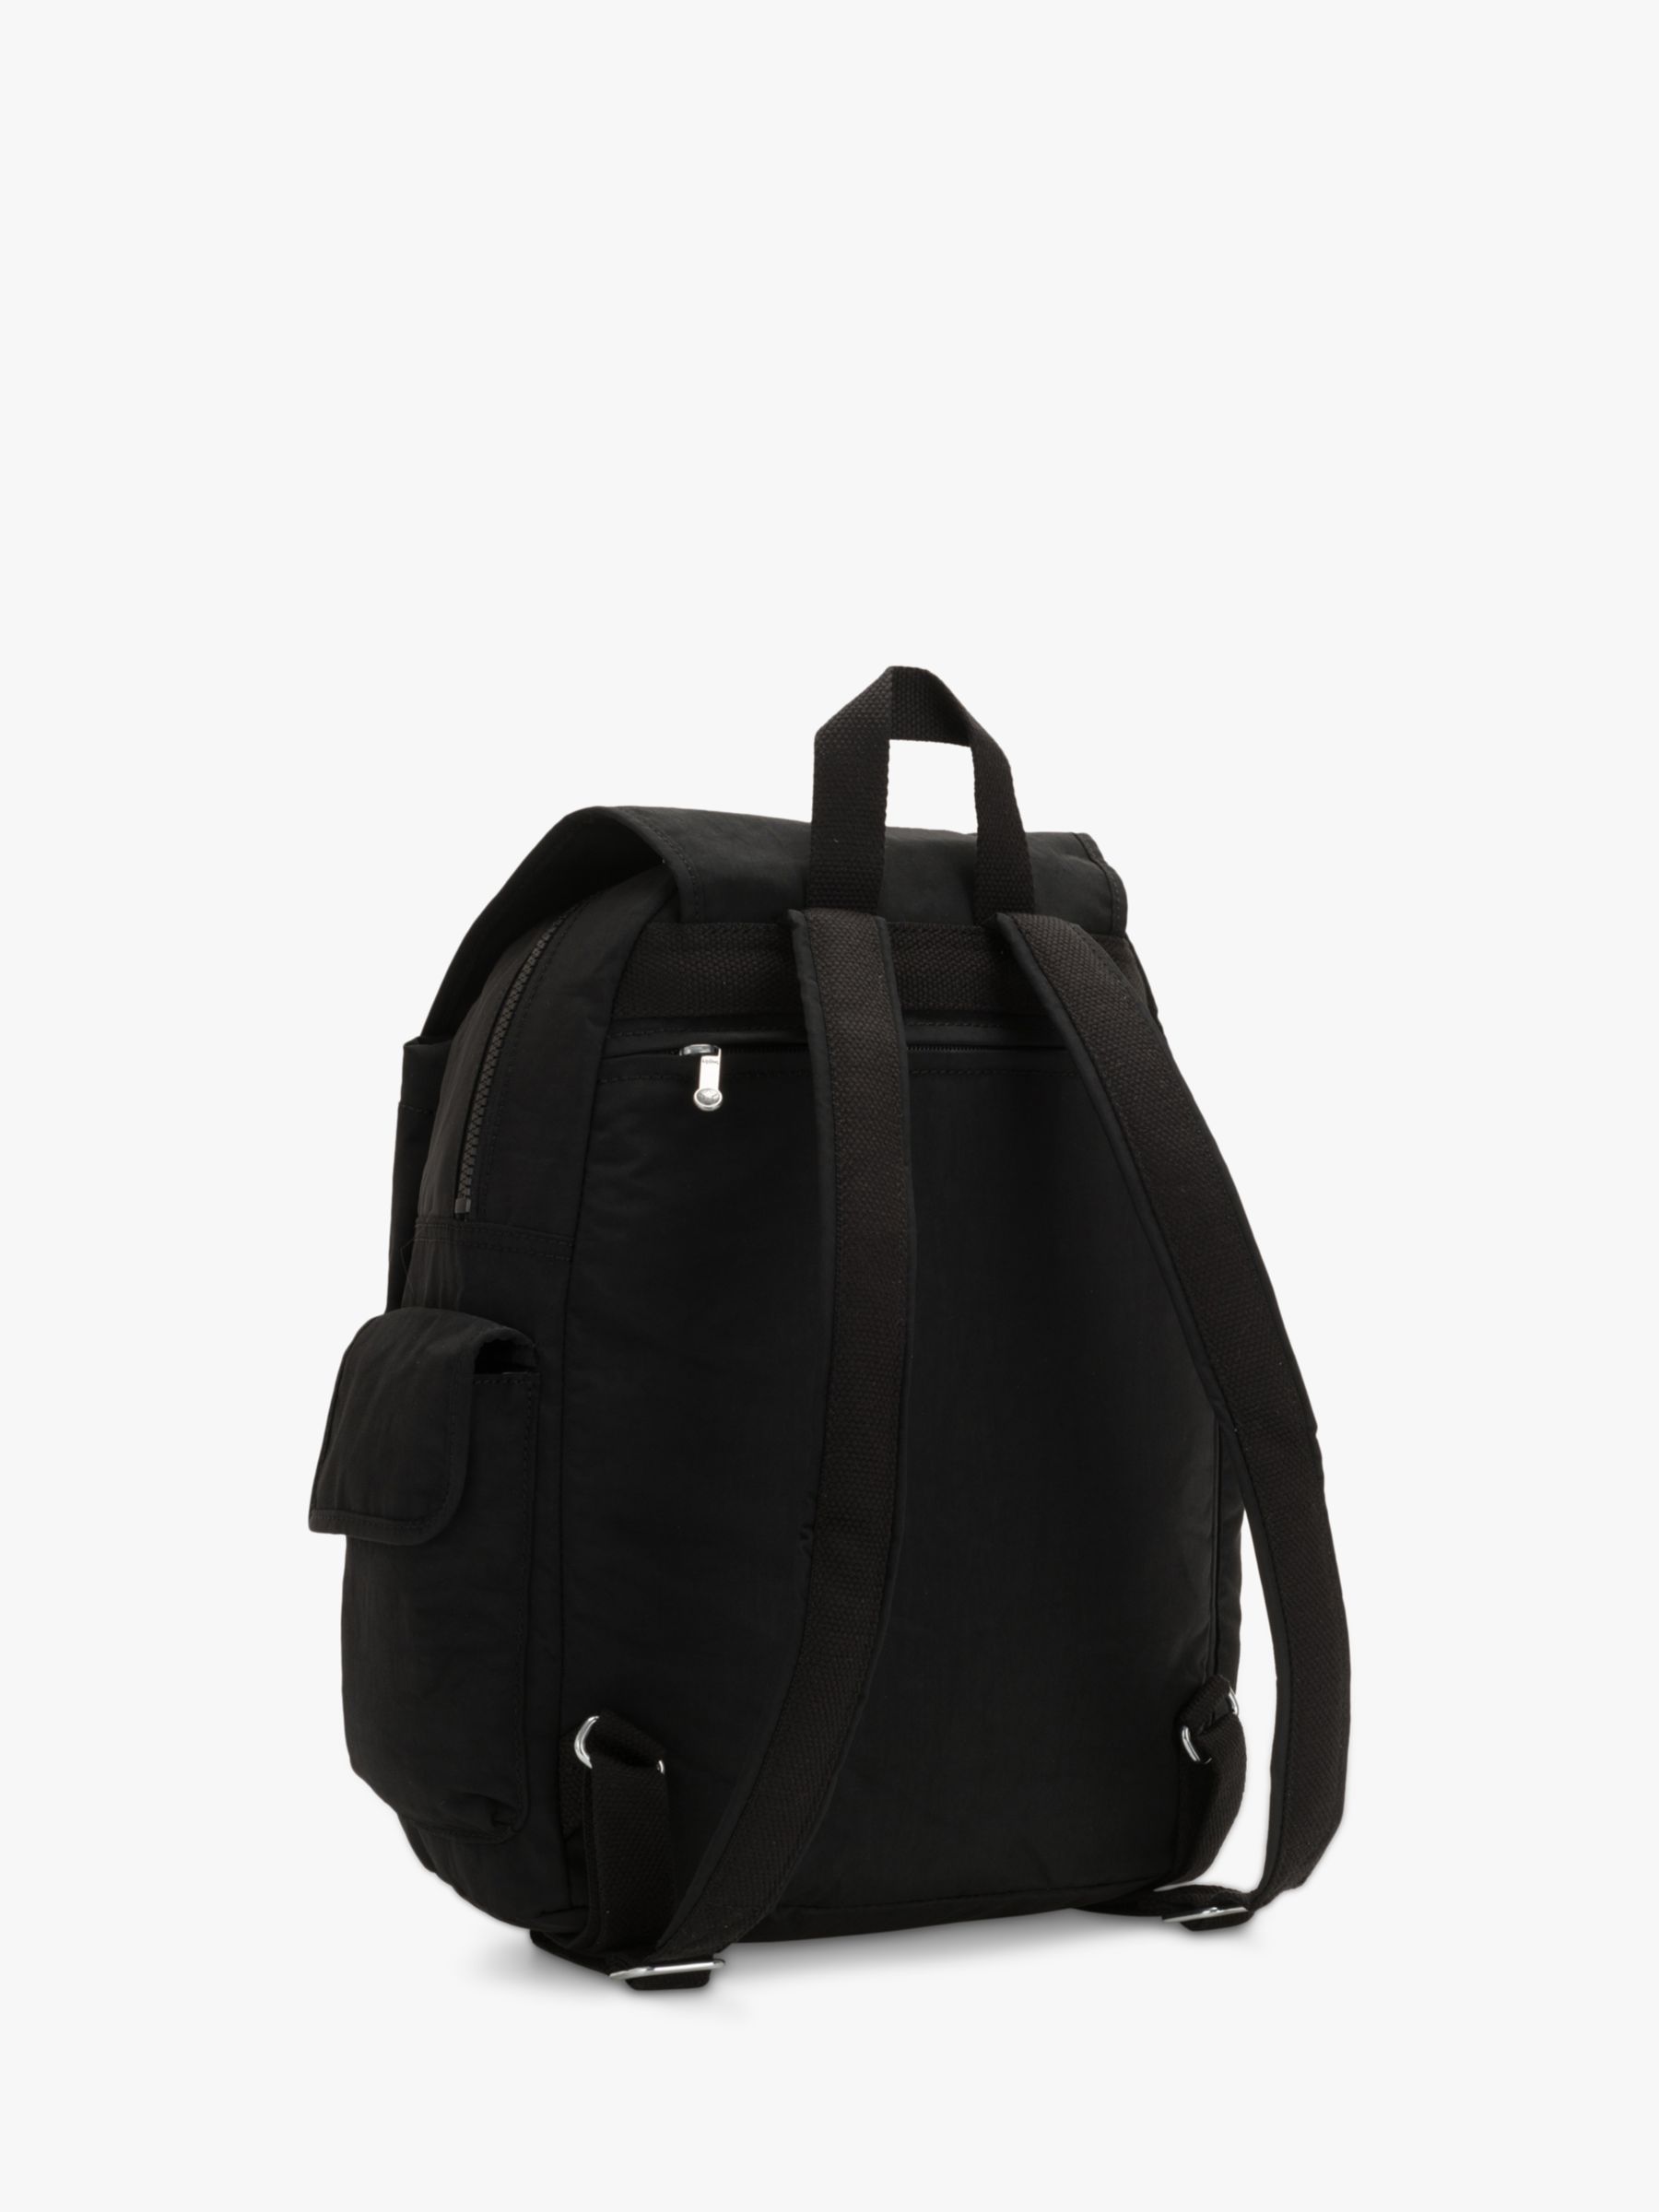 Buy Kipling City Pack Backpack Online at johnlewis.com